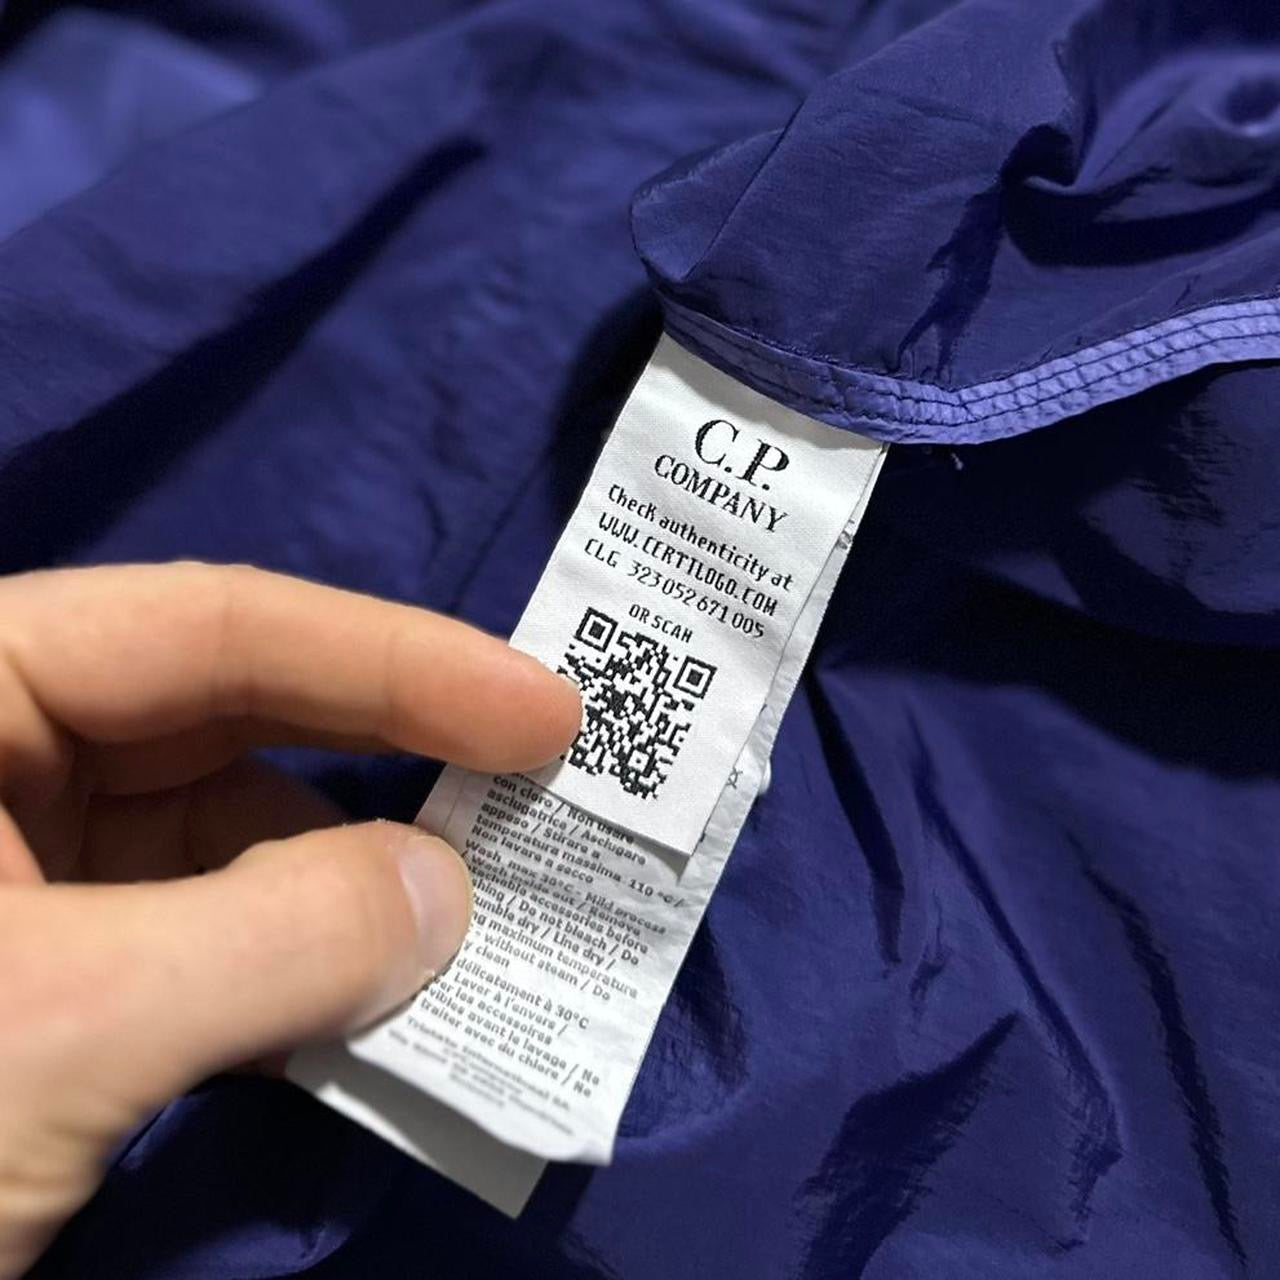 CP Company Blue Nylon Pullover Jacket